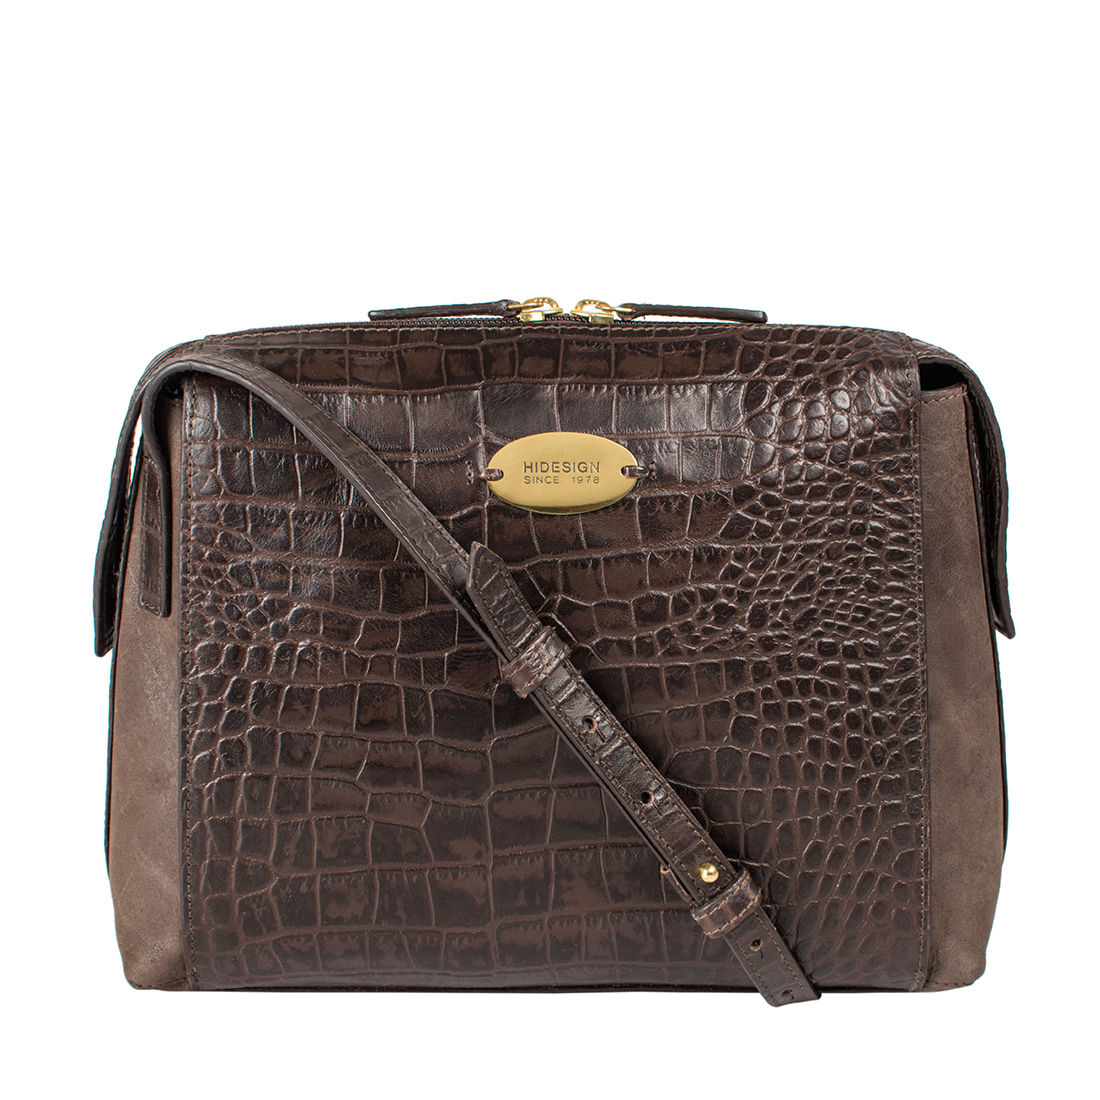 Hidesign Men's Laptop Bag (Brown) : Amazon.in: Fashion